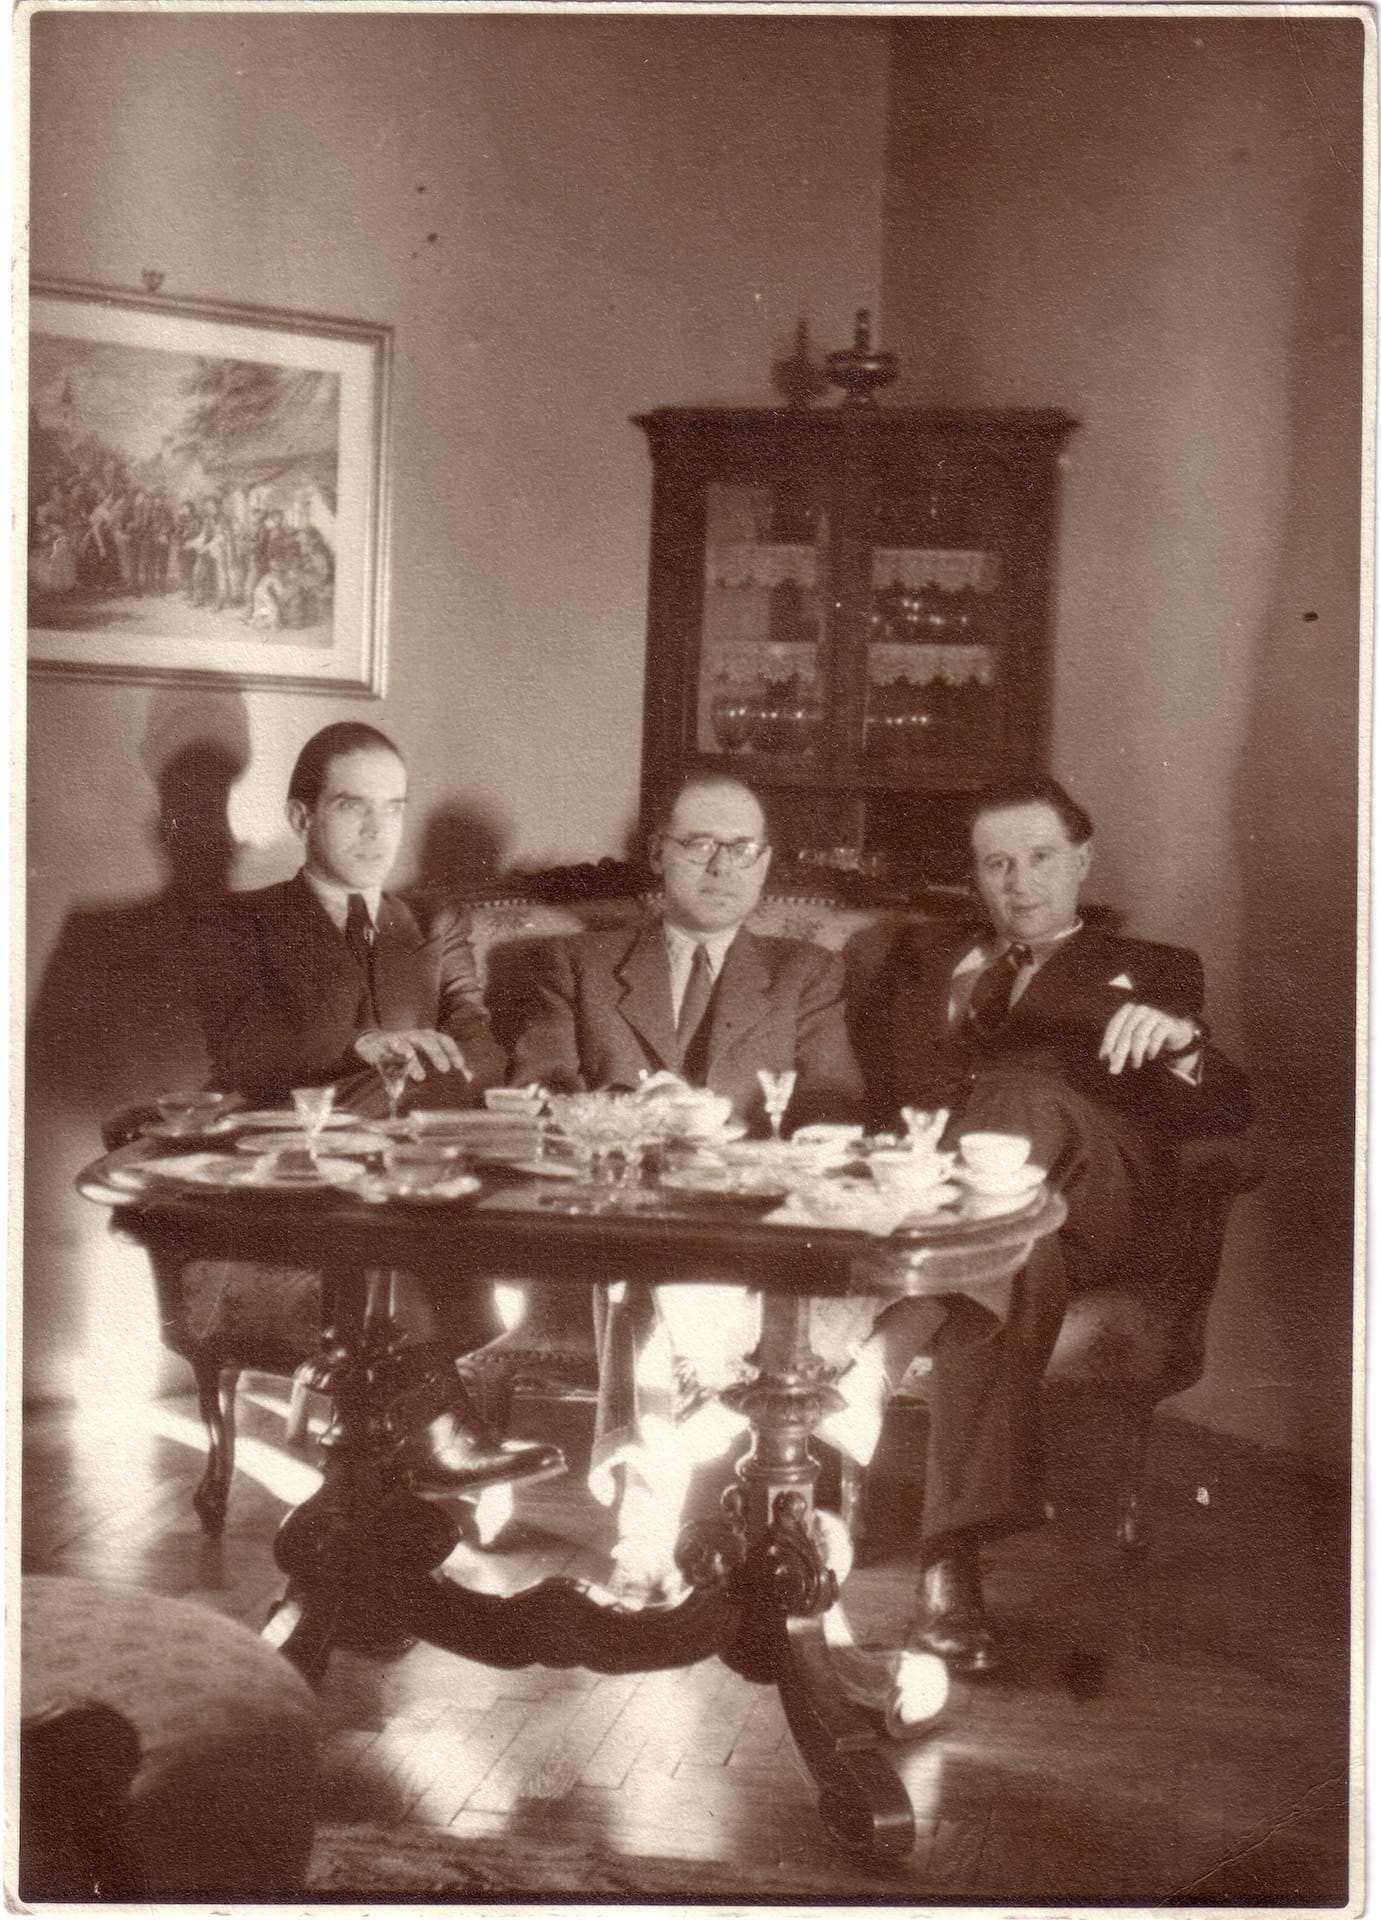 In Koloszvár with The magic cupboard’s stage dir. Kálmán Nádasdy and stage designer Gusztáv Oláh (1942)